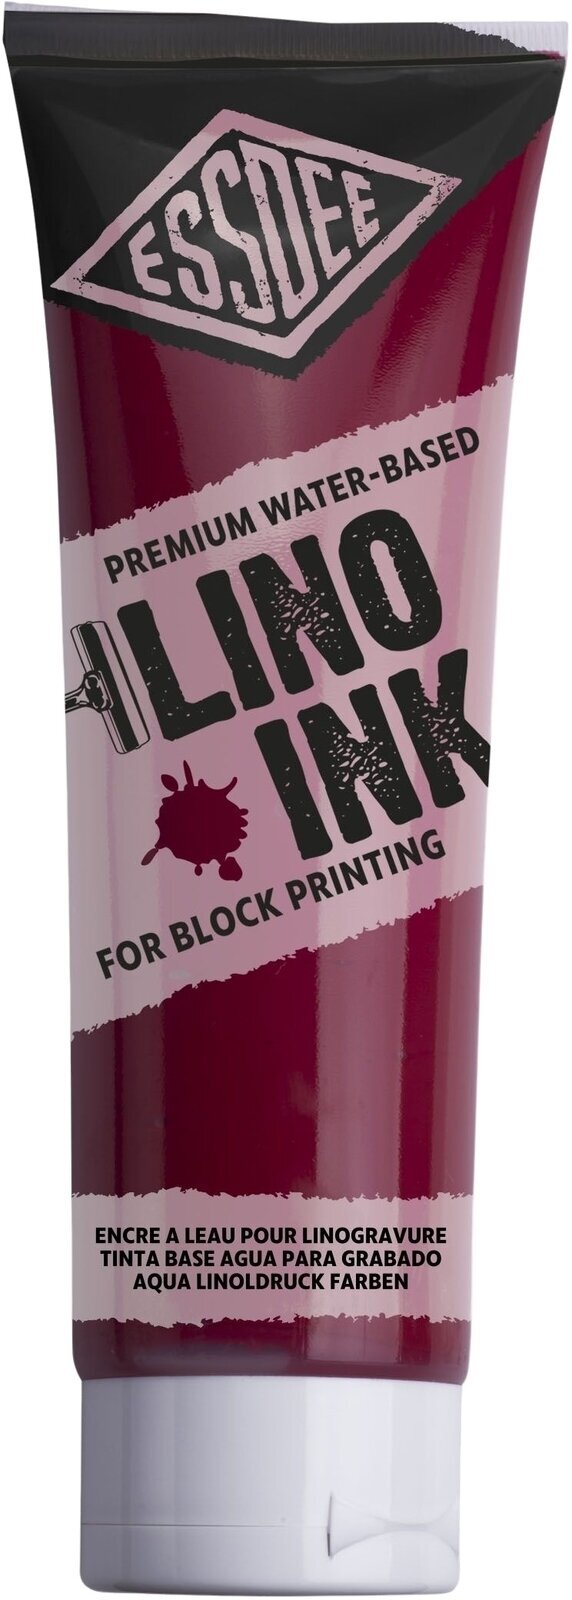 Peintures pour la linogravure Essdee Block Printing Ink Peintures pour la linogravure Crimson 300 ml